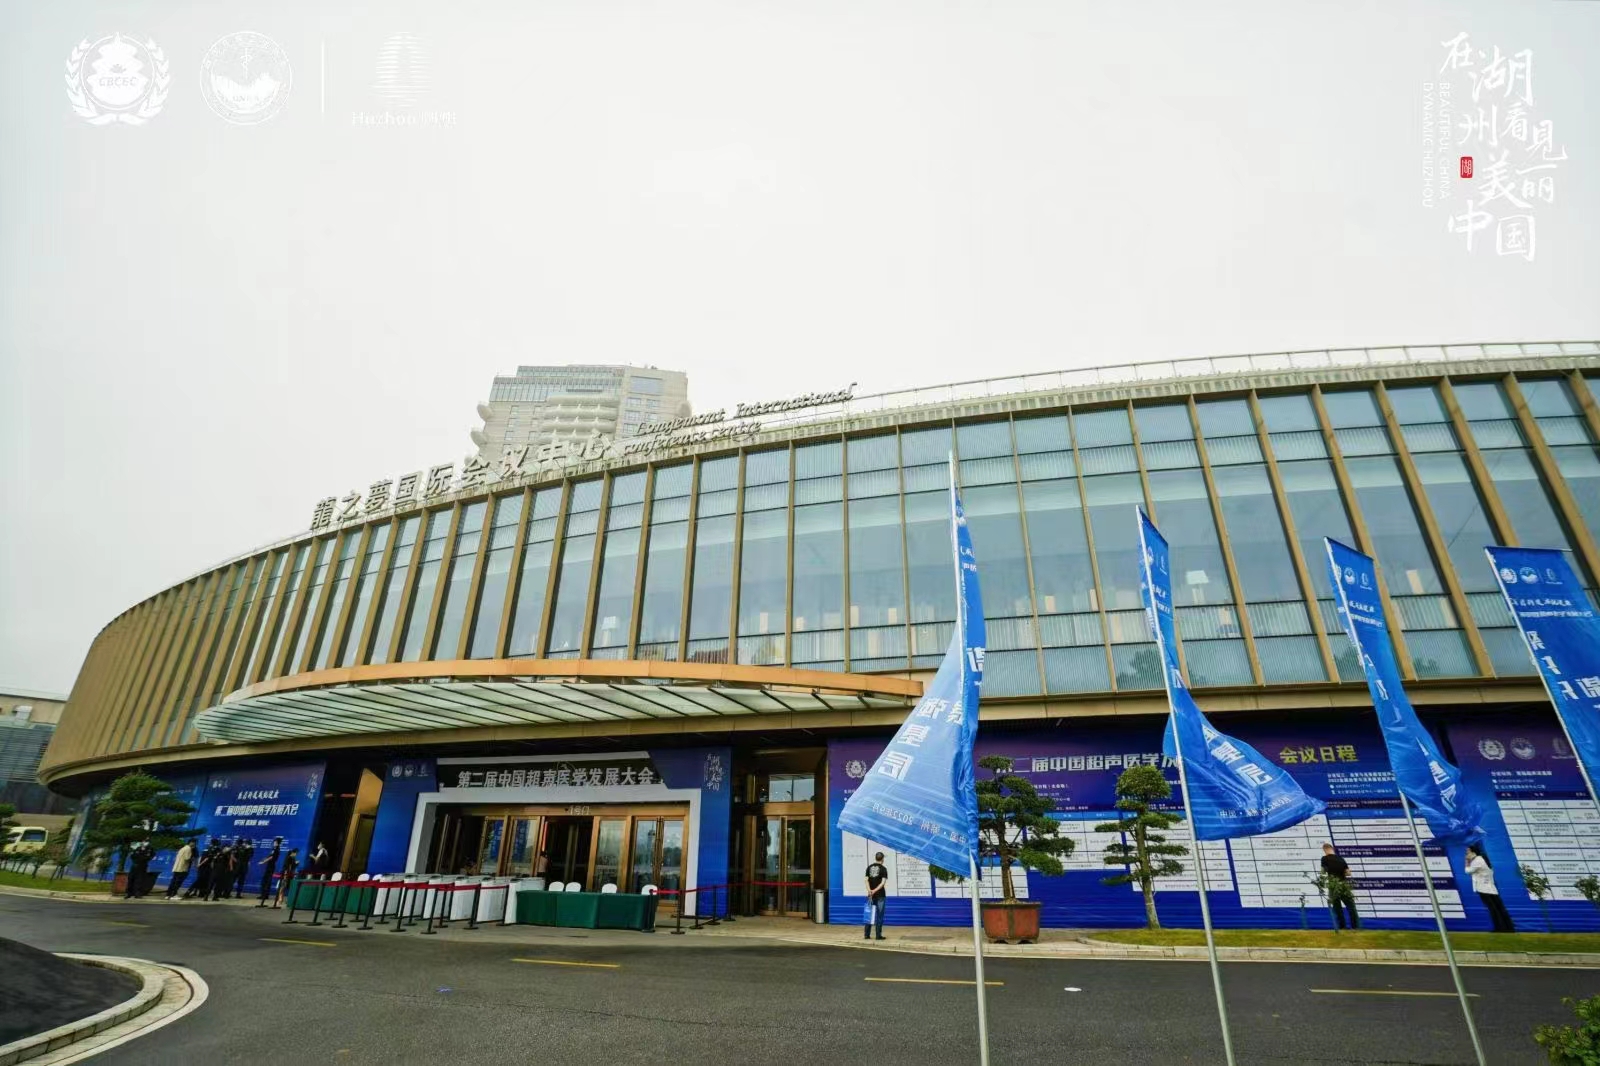 第二届中国超声医学发展大会，索诺星SonoStar作为大会的主要赞助商之一，也应邀做了《用“掌声”吹响精准普惠医疗的号角》的主题报告